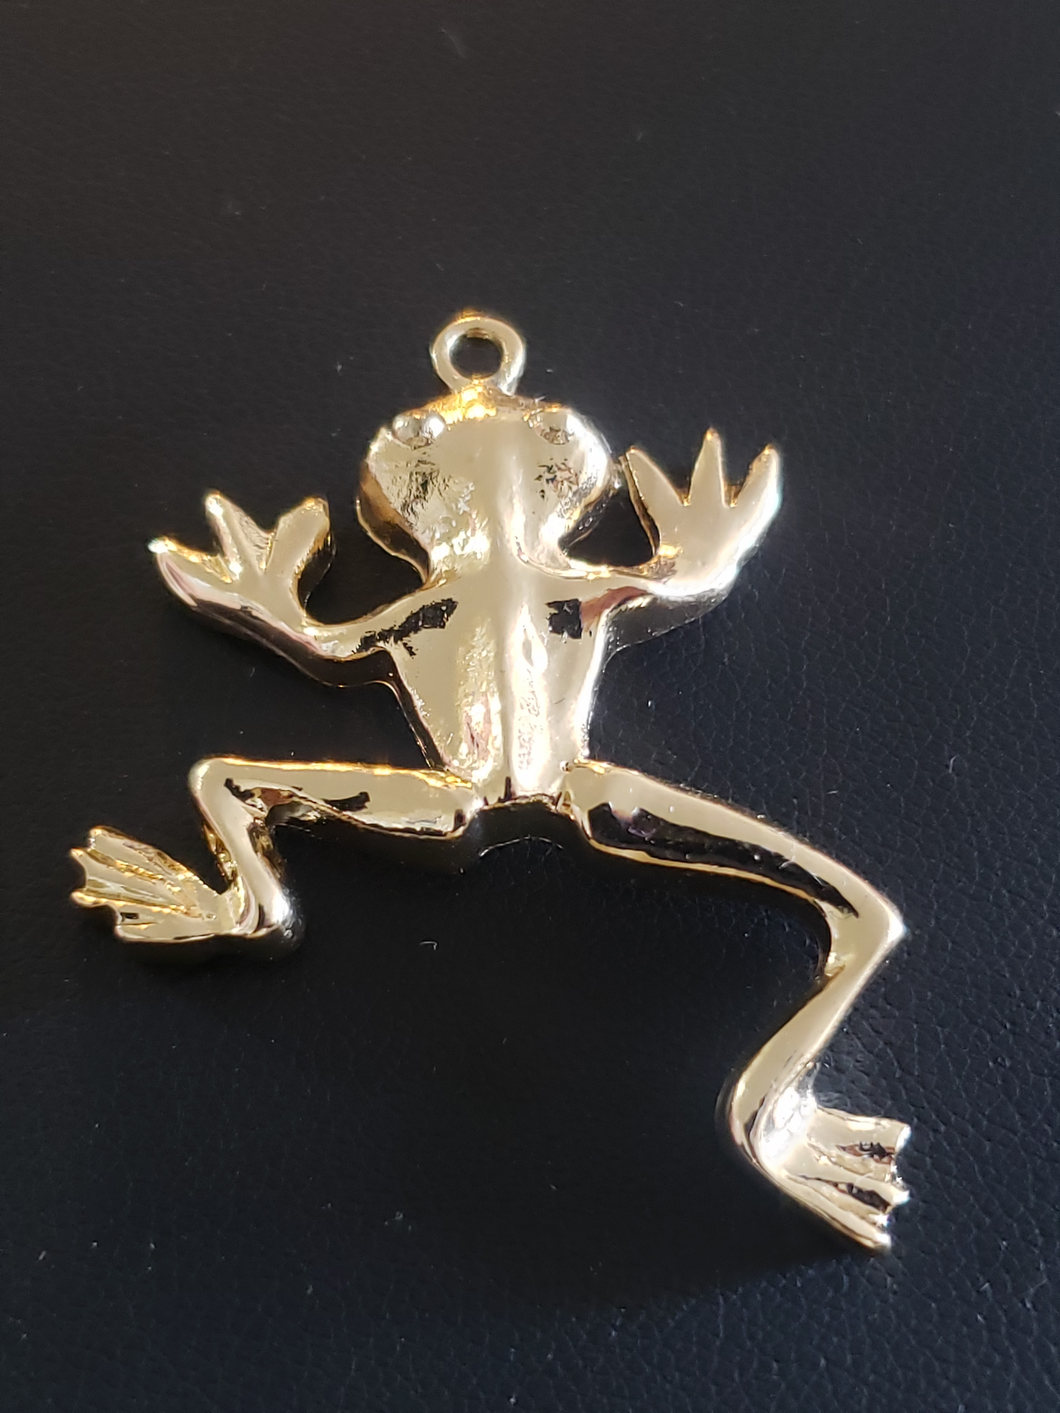 Frog design